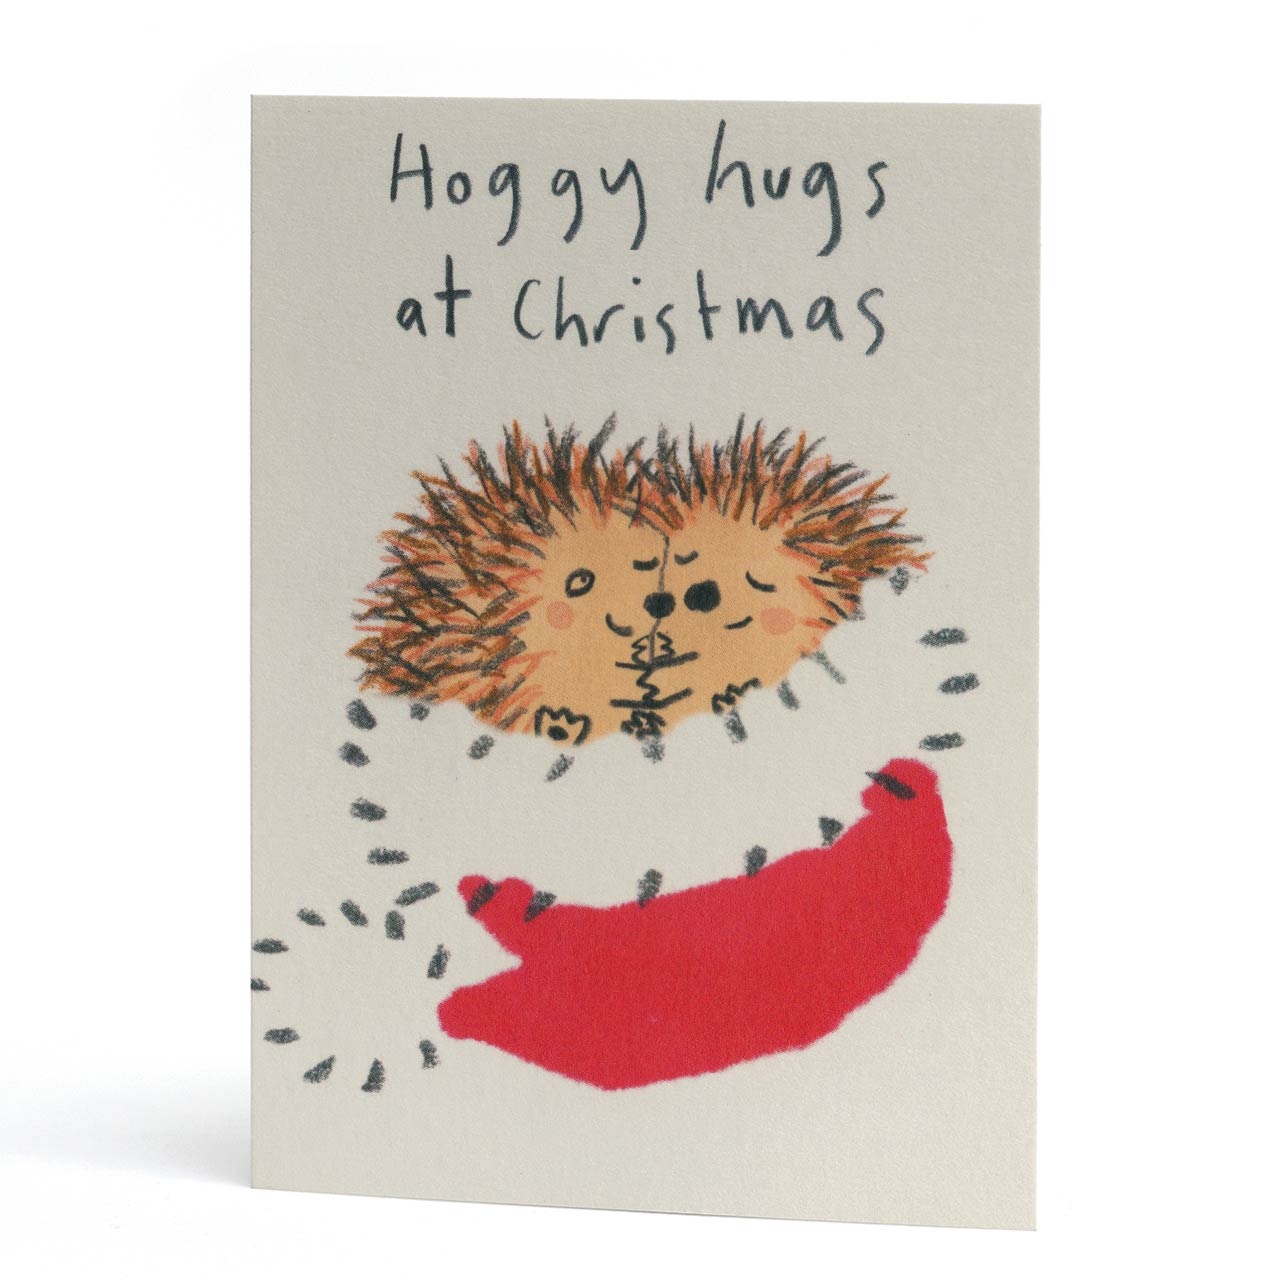 Hoggy Hugs at Christmas Card